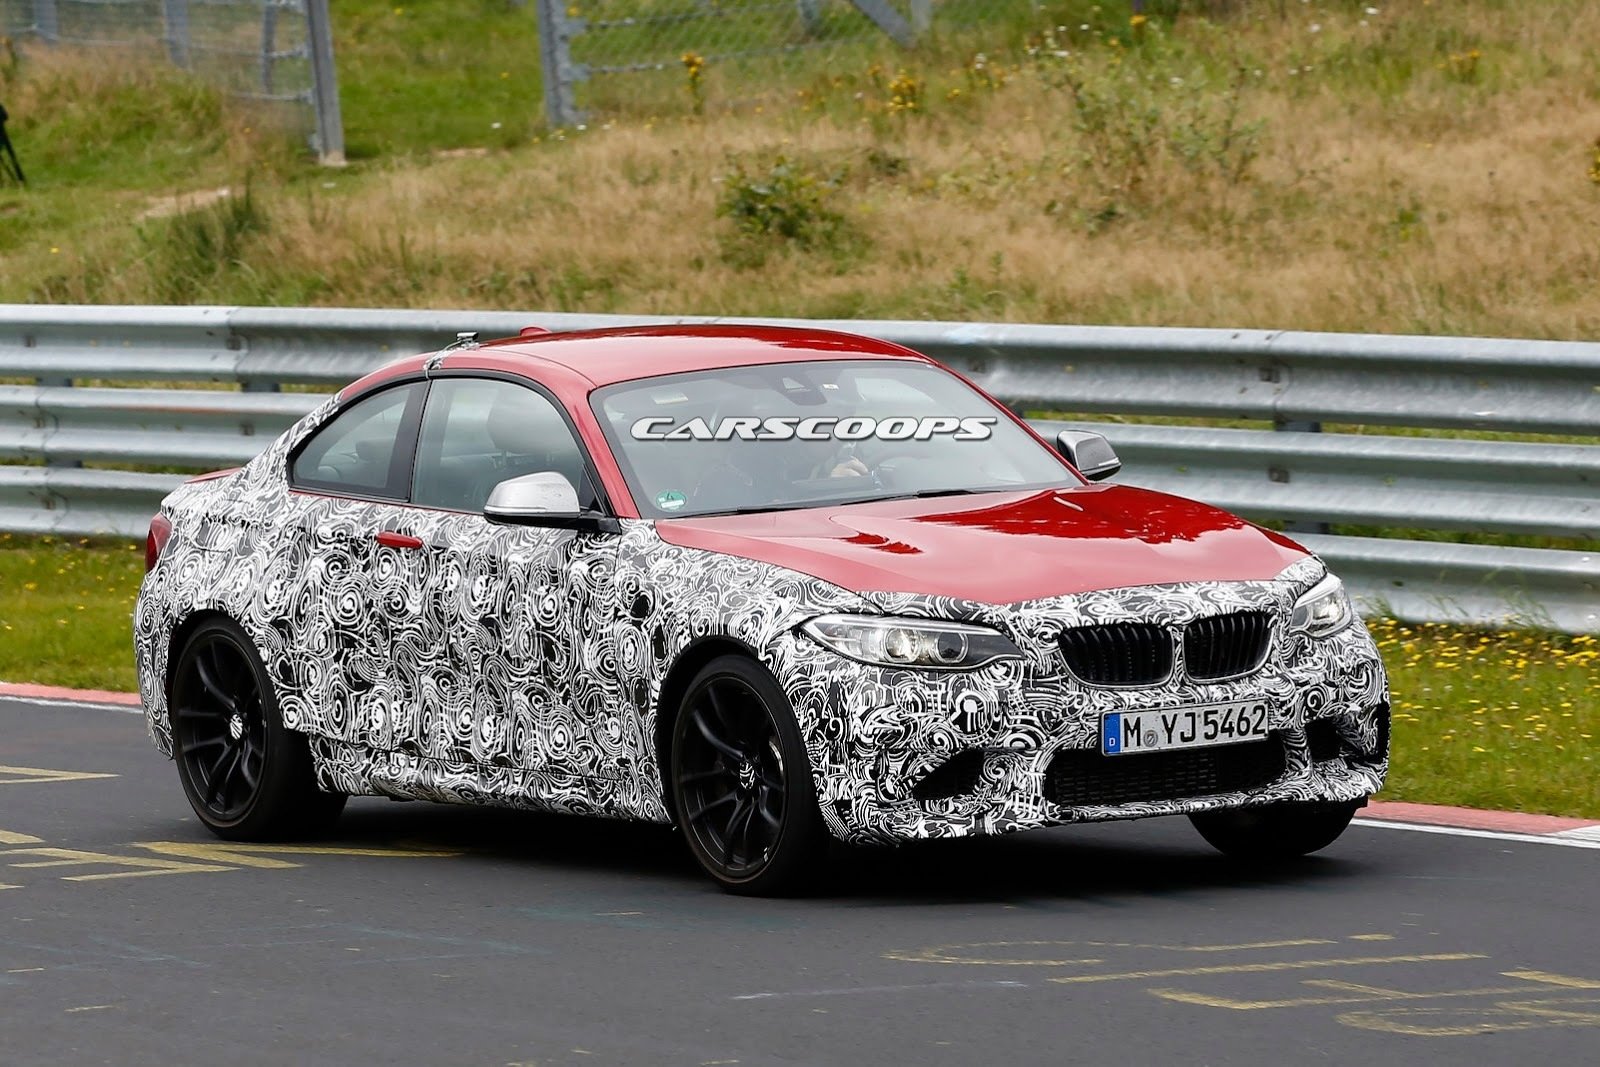 BMW M2 Prototype gespot op de Ring